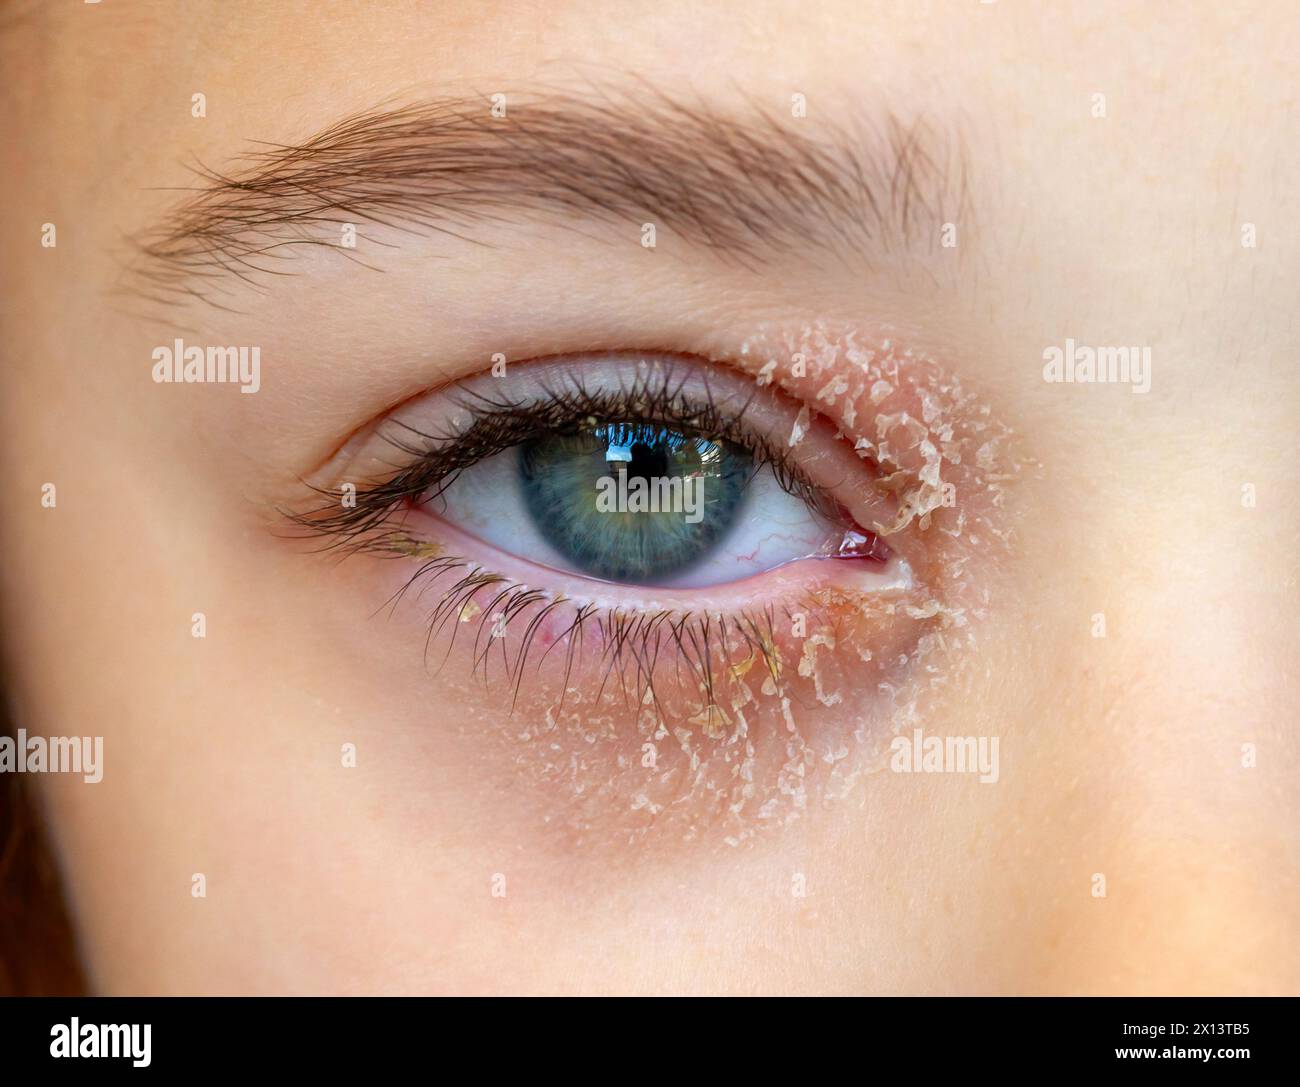 Occhio di una bambina affetta da dermatite atopica oculare o eczema palpebrale. Foto Stock